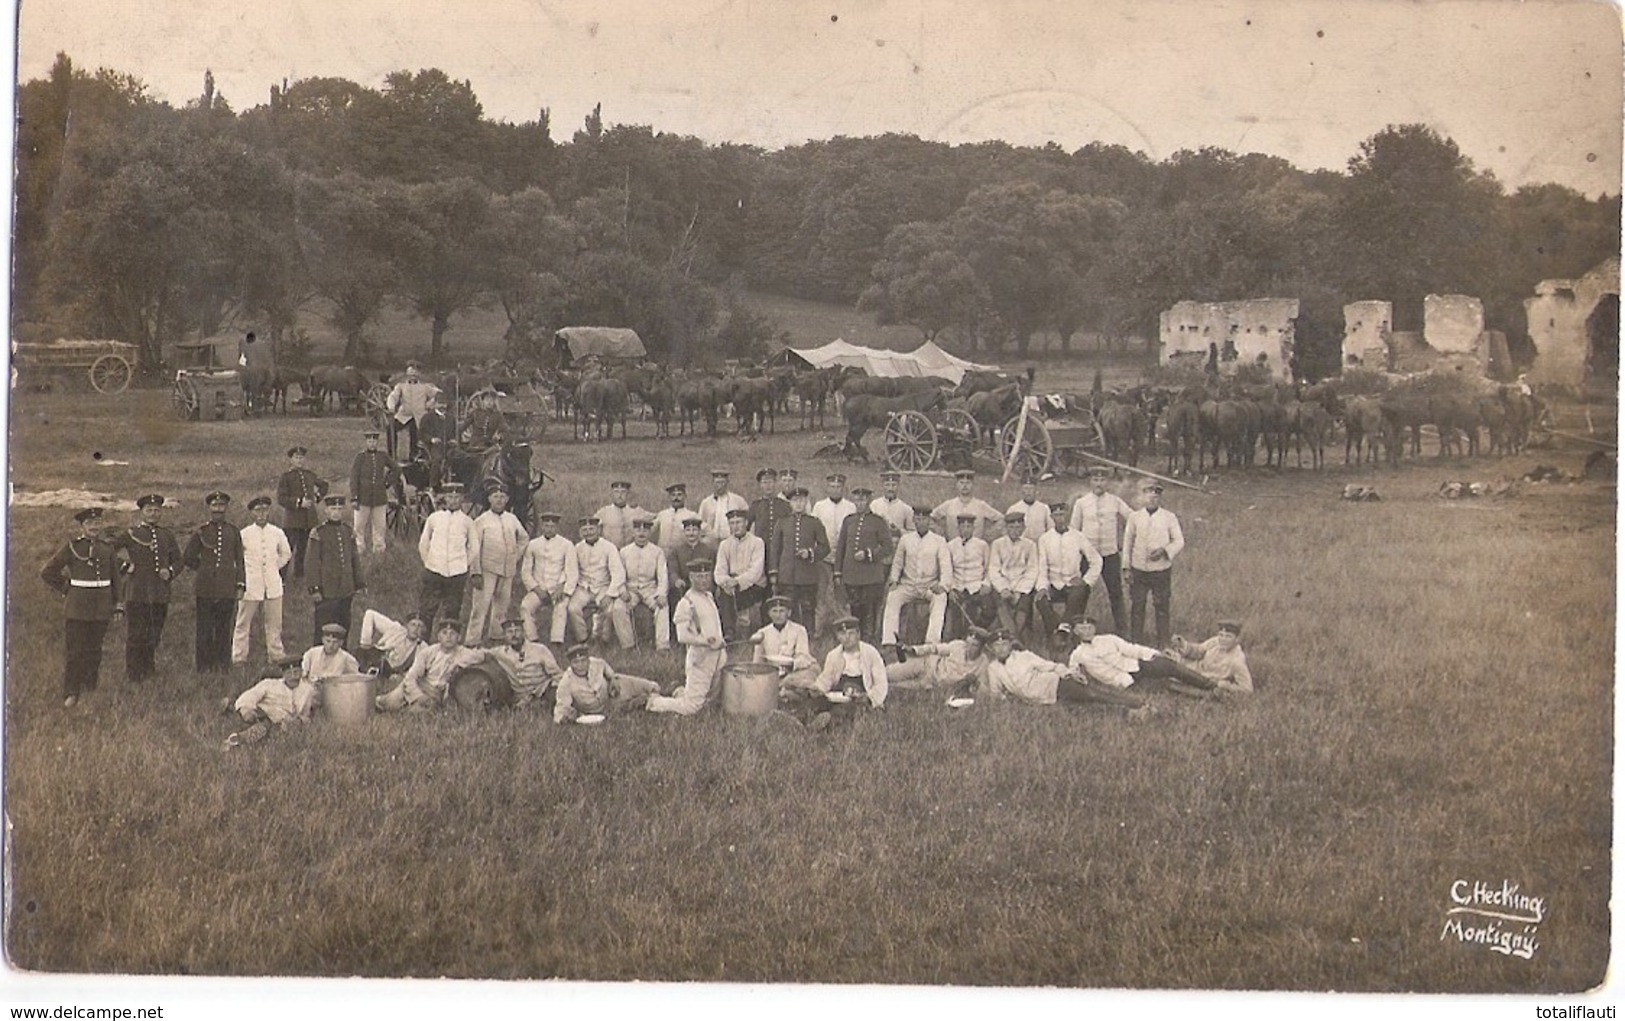 METZ Montigny Biwak Lager Am Frankenstein Kavallerie Pferde Soldaten Original Fotokarte Der Zeit 12.9.1913 Gelaufen - Metz Campagne